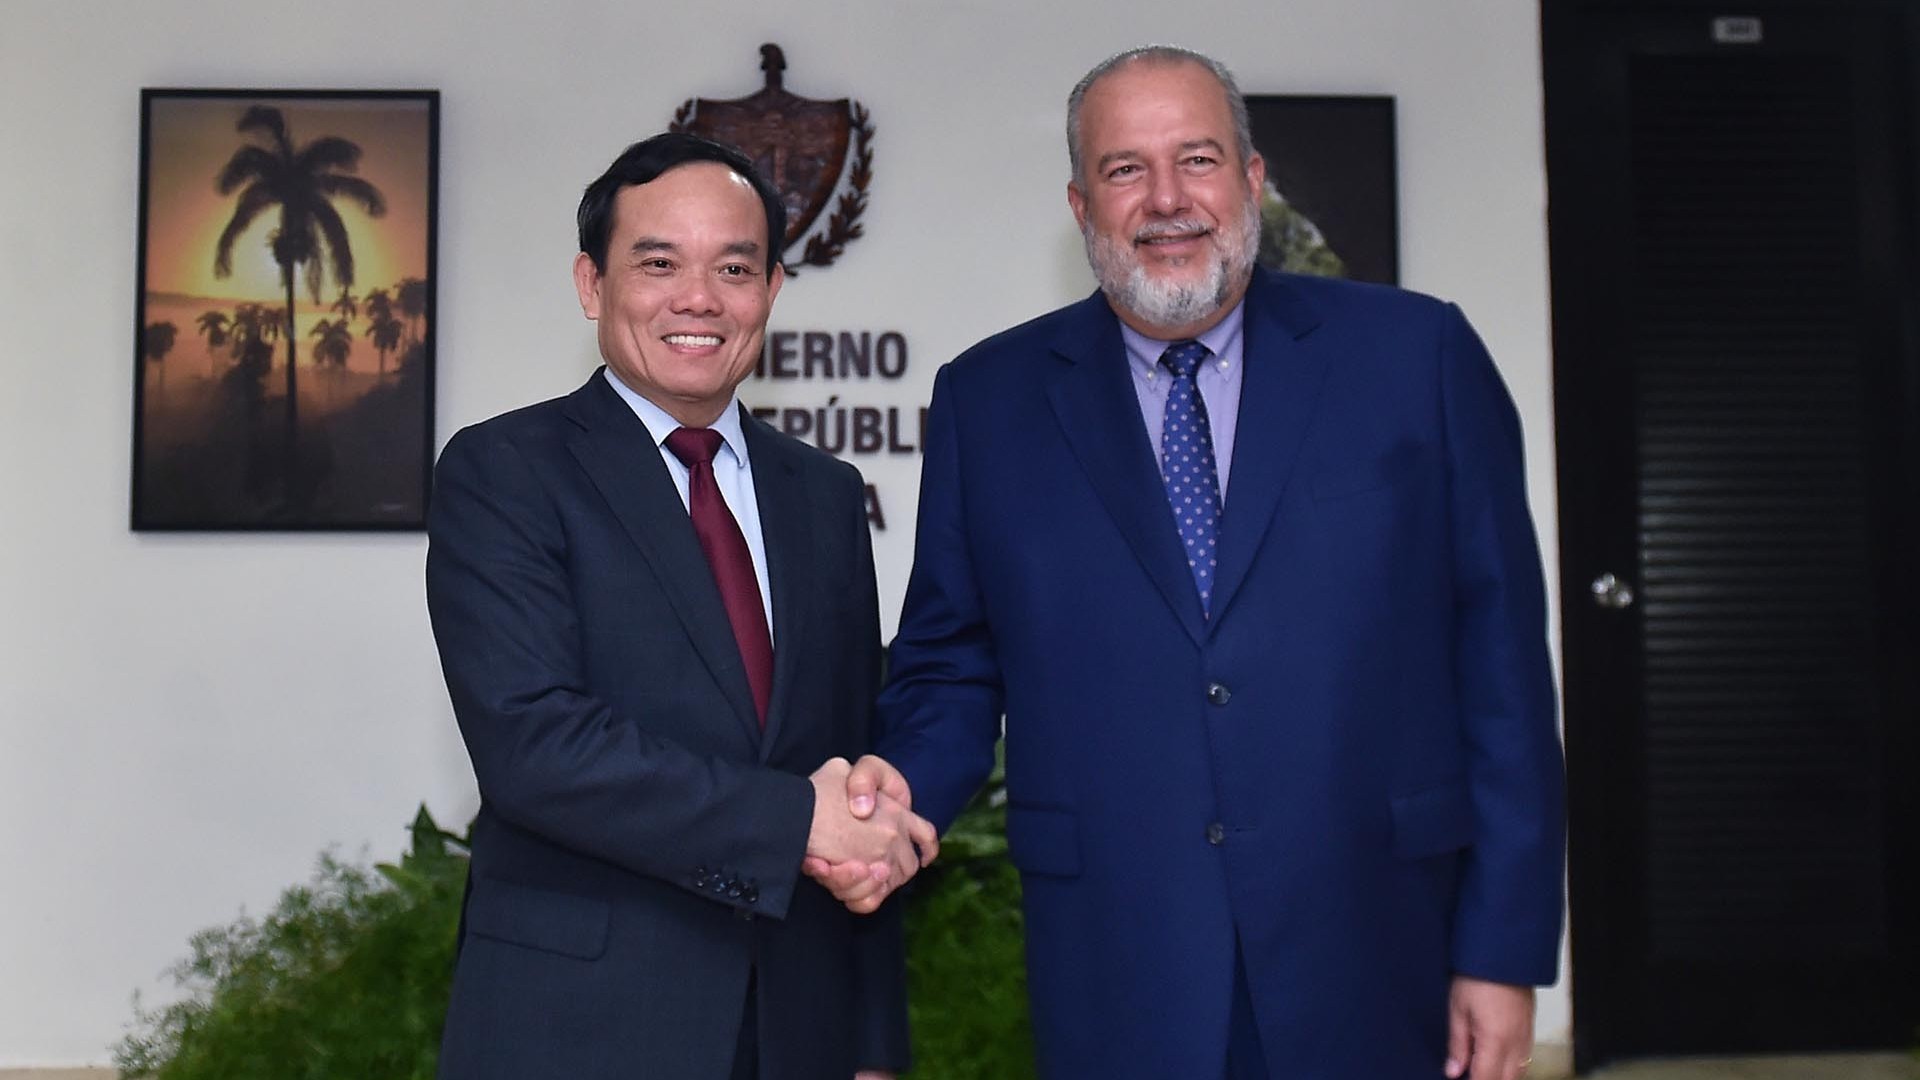 Thủ tướng Manuel Marrero Cruz: Tạo điều kiện thuận lợi cho doanh nghiệp Việt Nam đầu tư kinh doanh tại Cuba